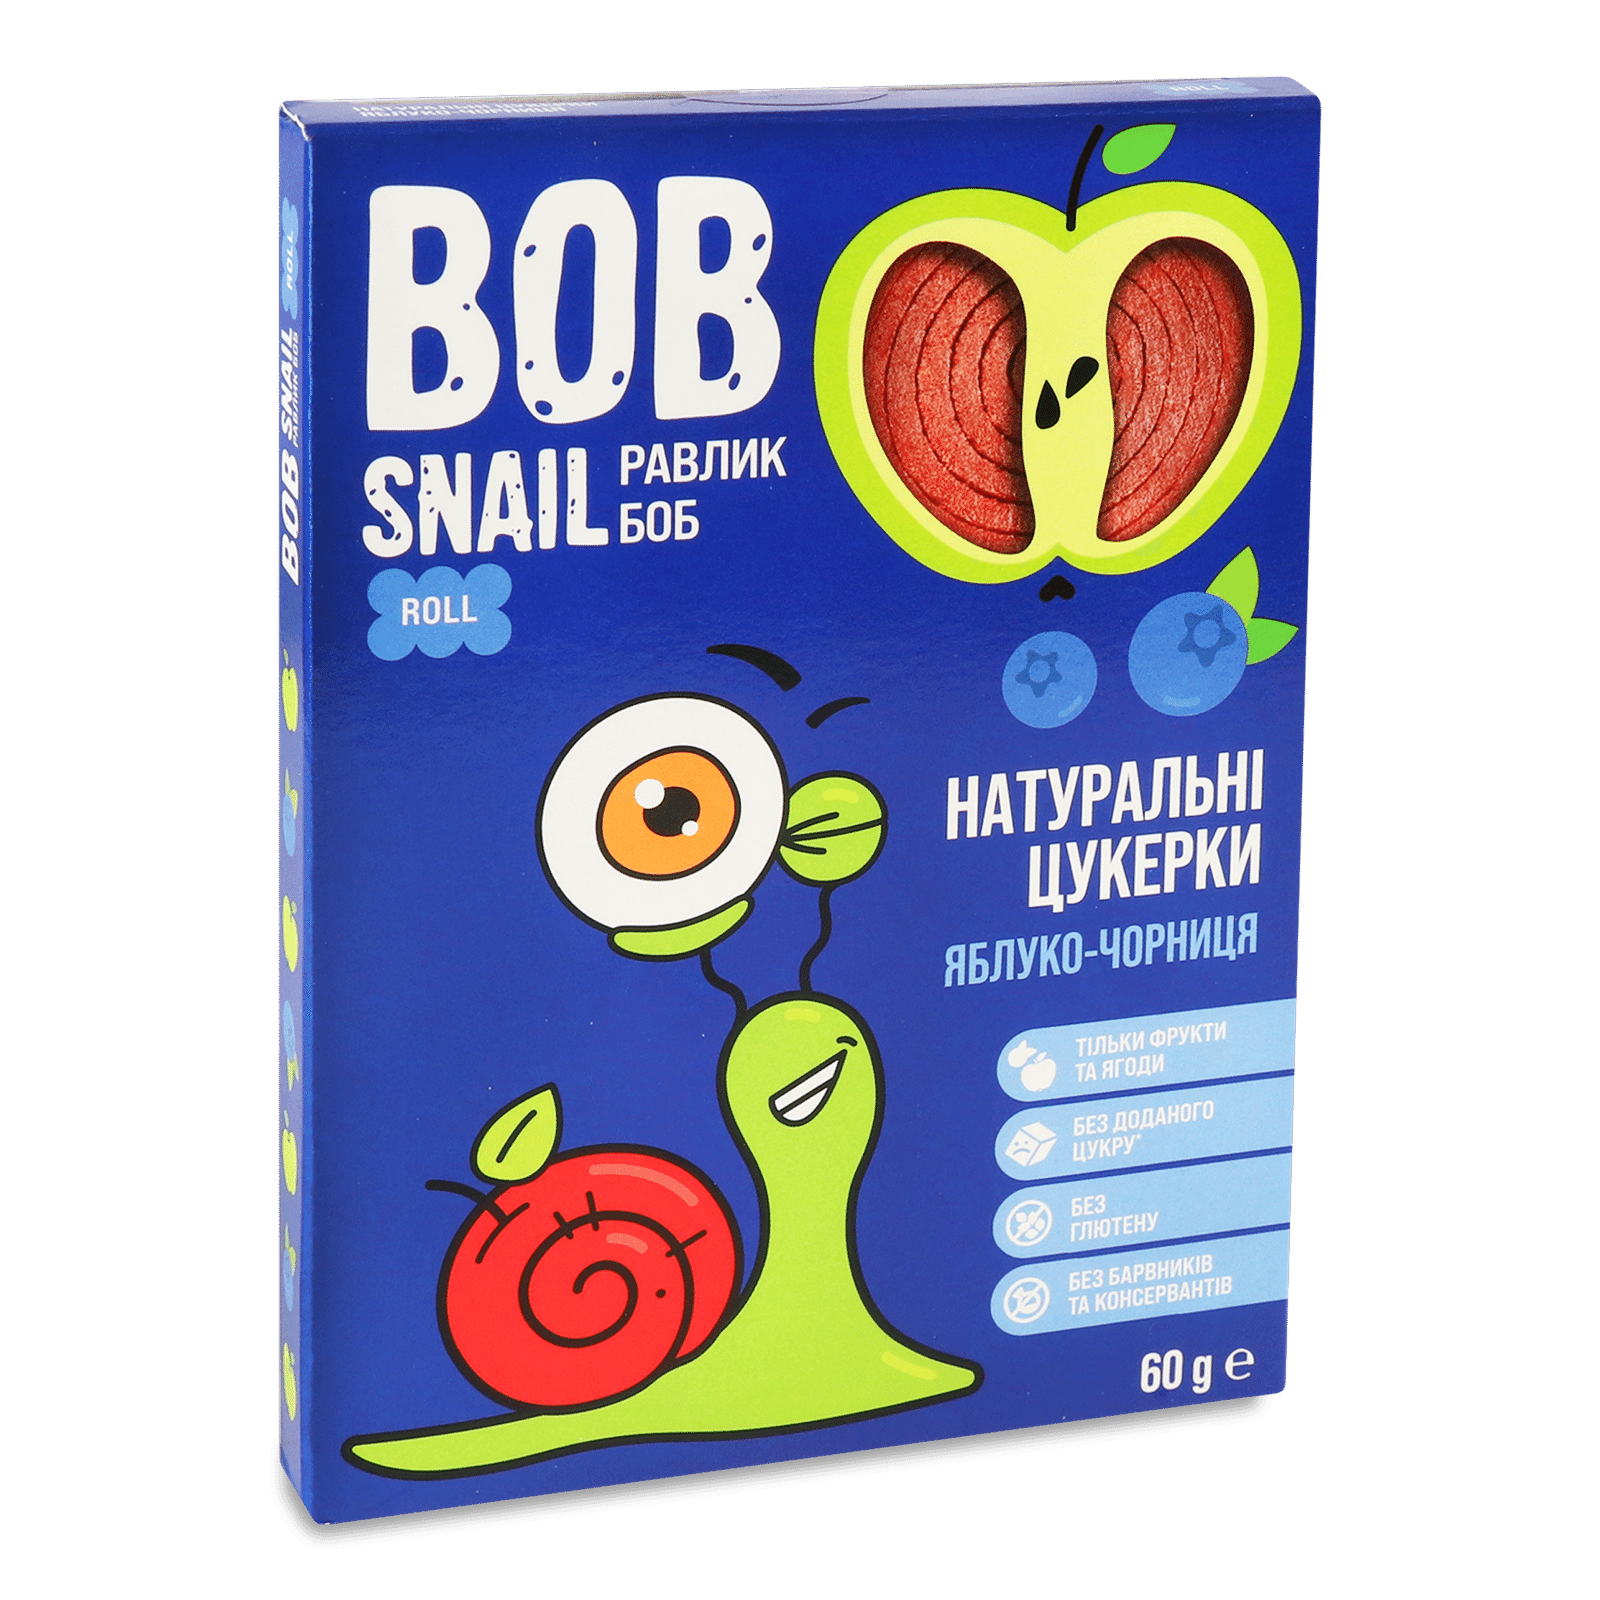 Цукерки Bob Snail натуральні яблучно-чорничні - 1